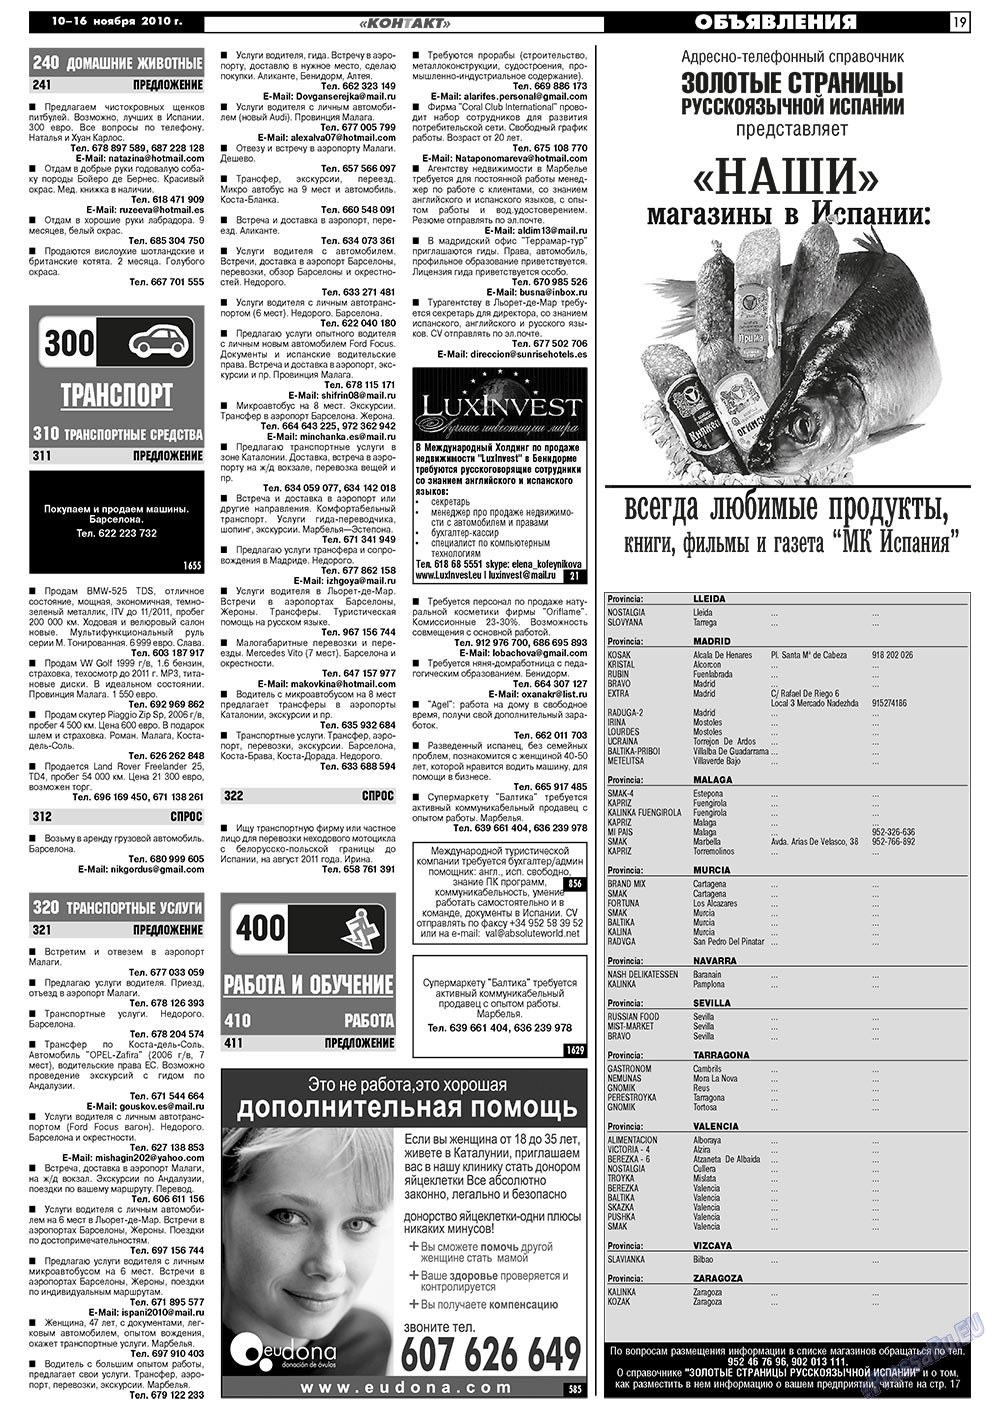 МК Испания, газета. 2010 №45 стр.19